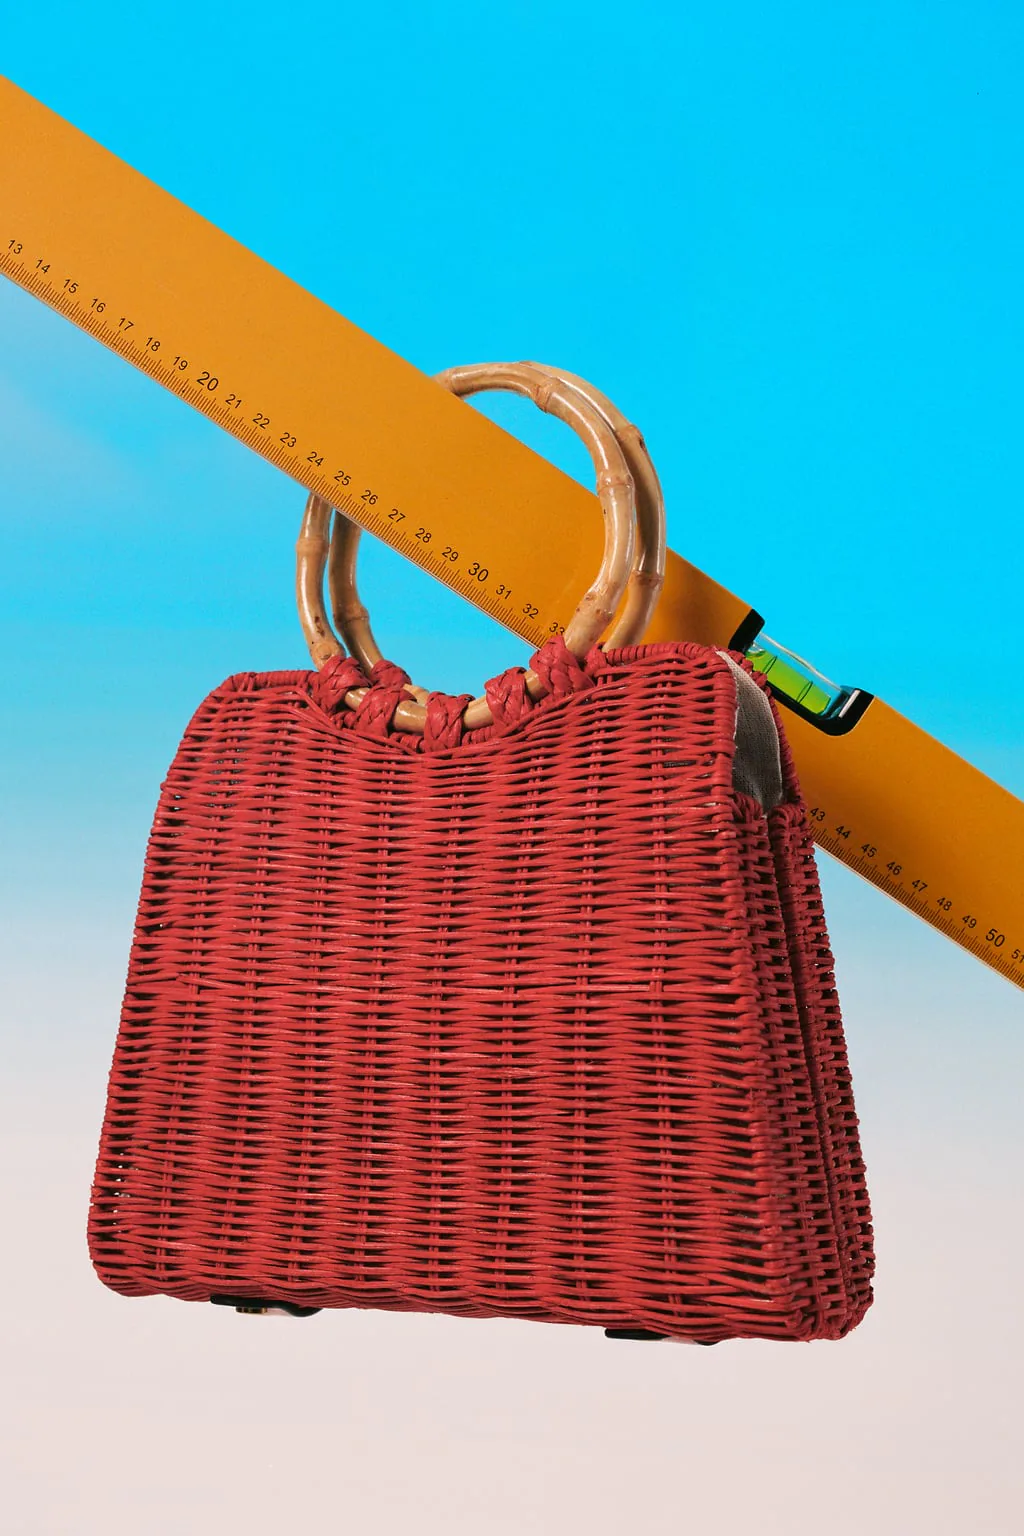 Estos son los bolsos de de Zara y Mango van a arrasar los próximos meses ¡no los dejes escapar! | Mujer Hoy